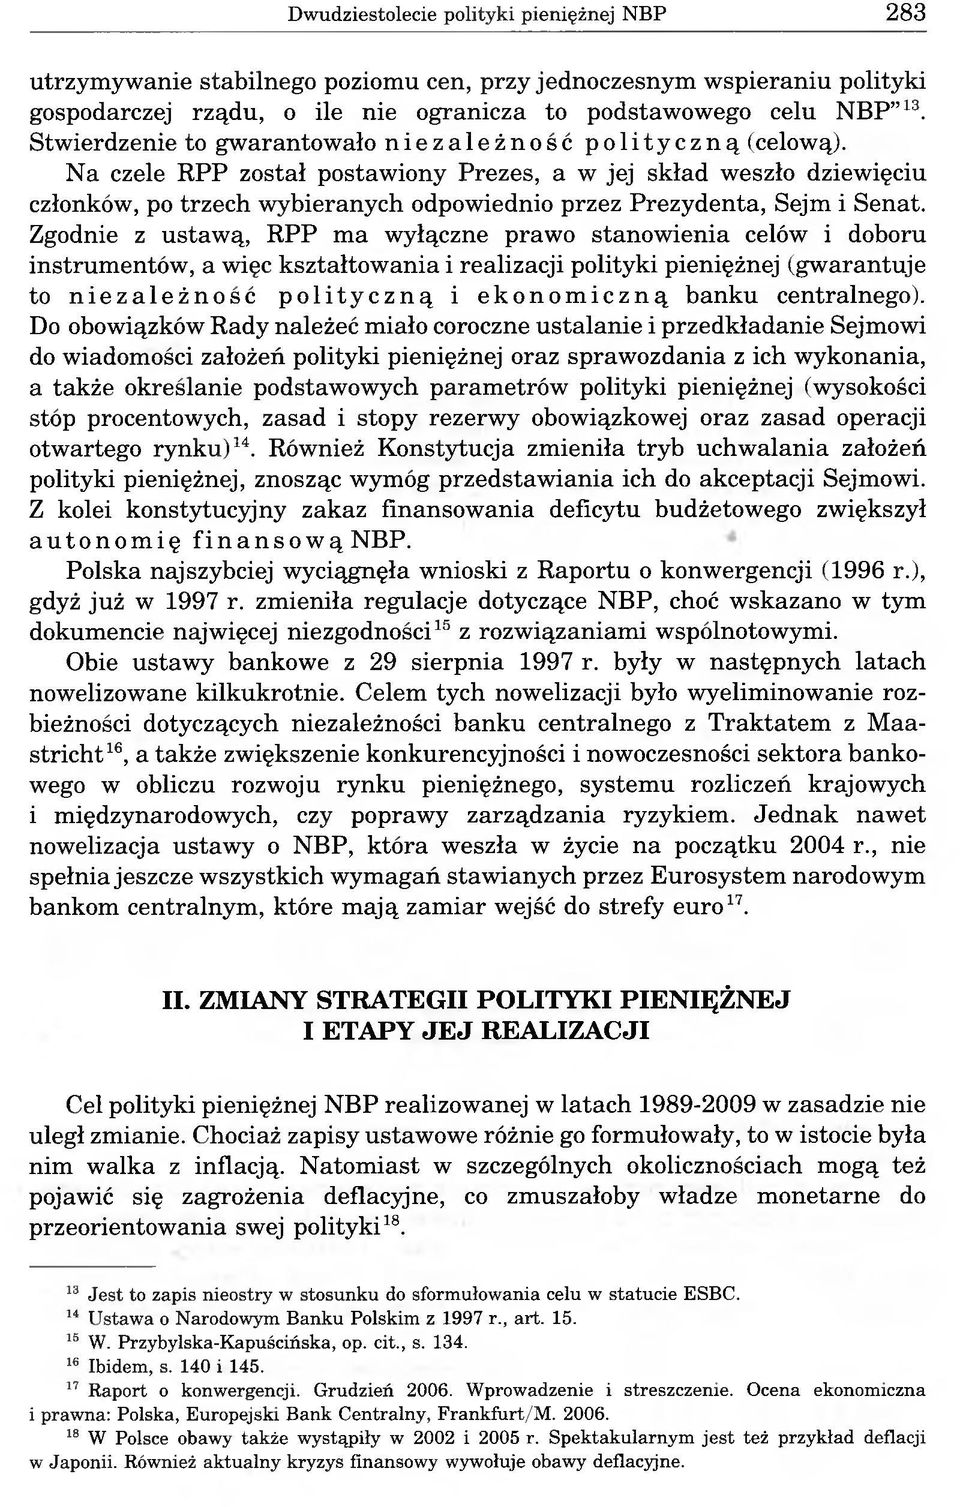 Na czele RPP został postawiony Prezes, a w jej skład weszło dziewięciu członków, po trzech wybieranych odpowiednio przez Prezydenta, Sejm i Senat.